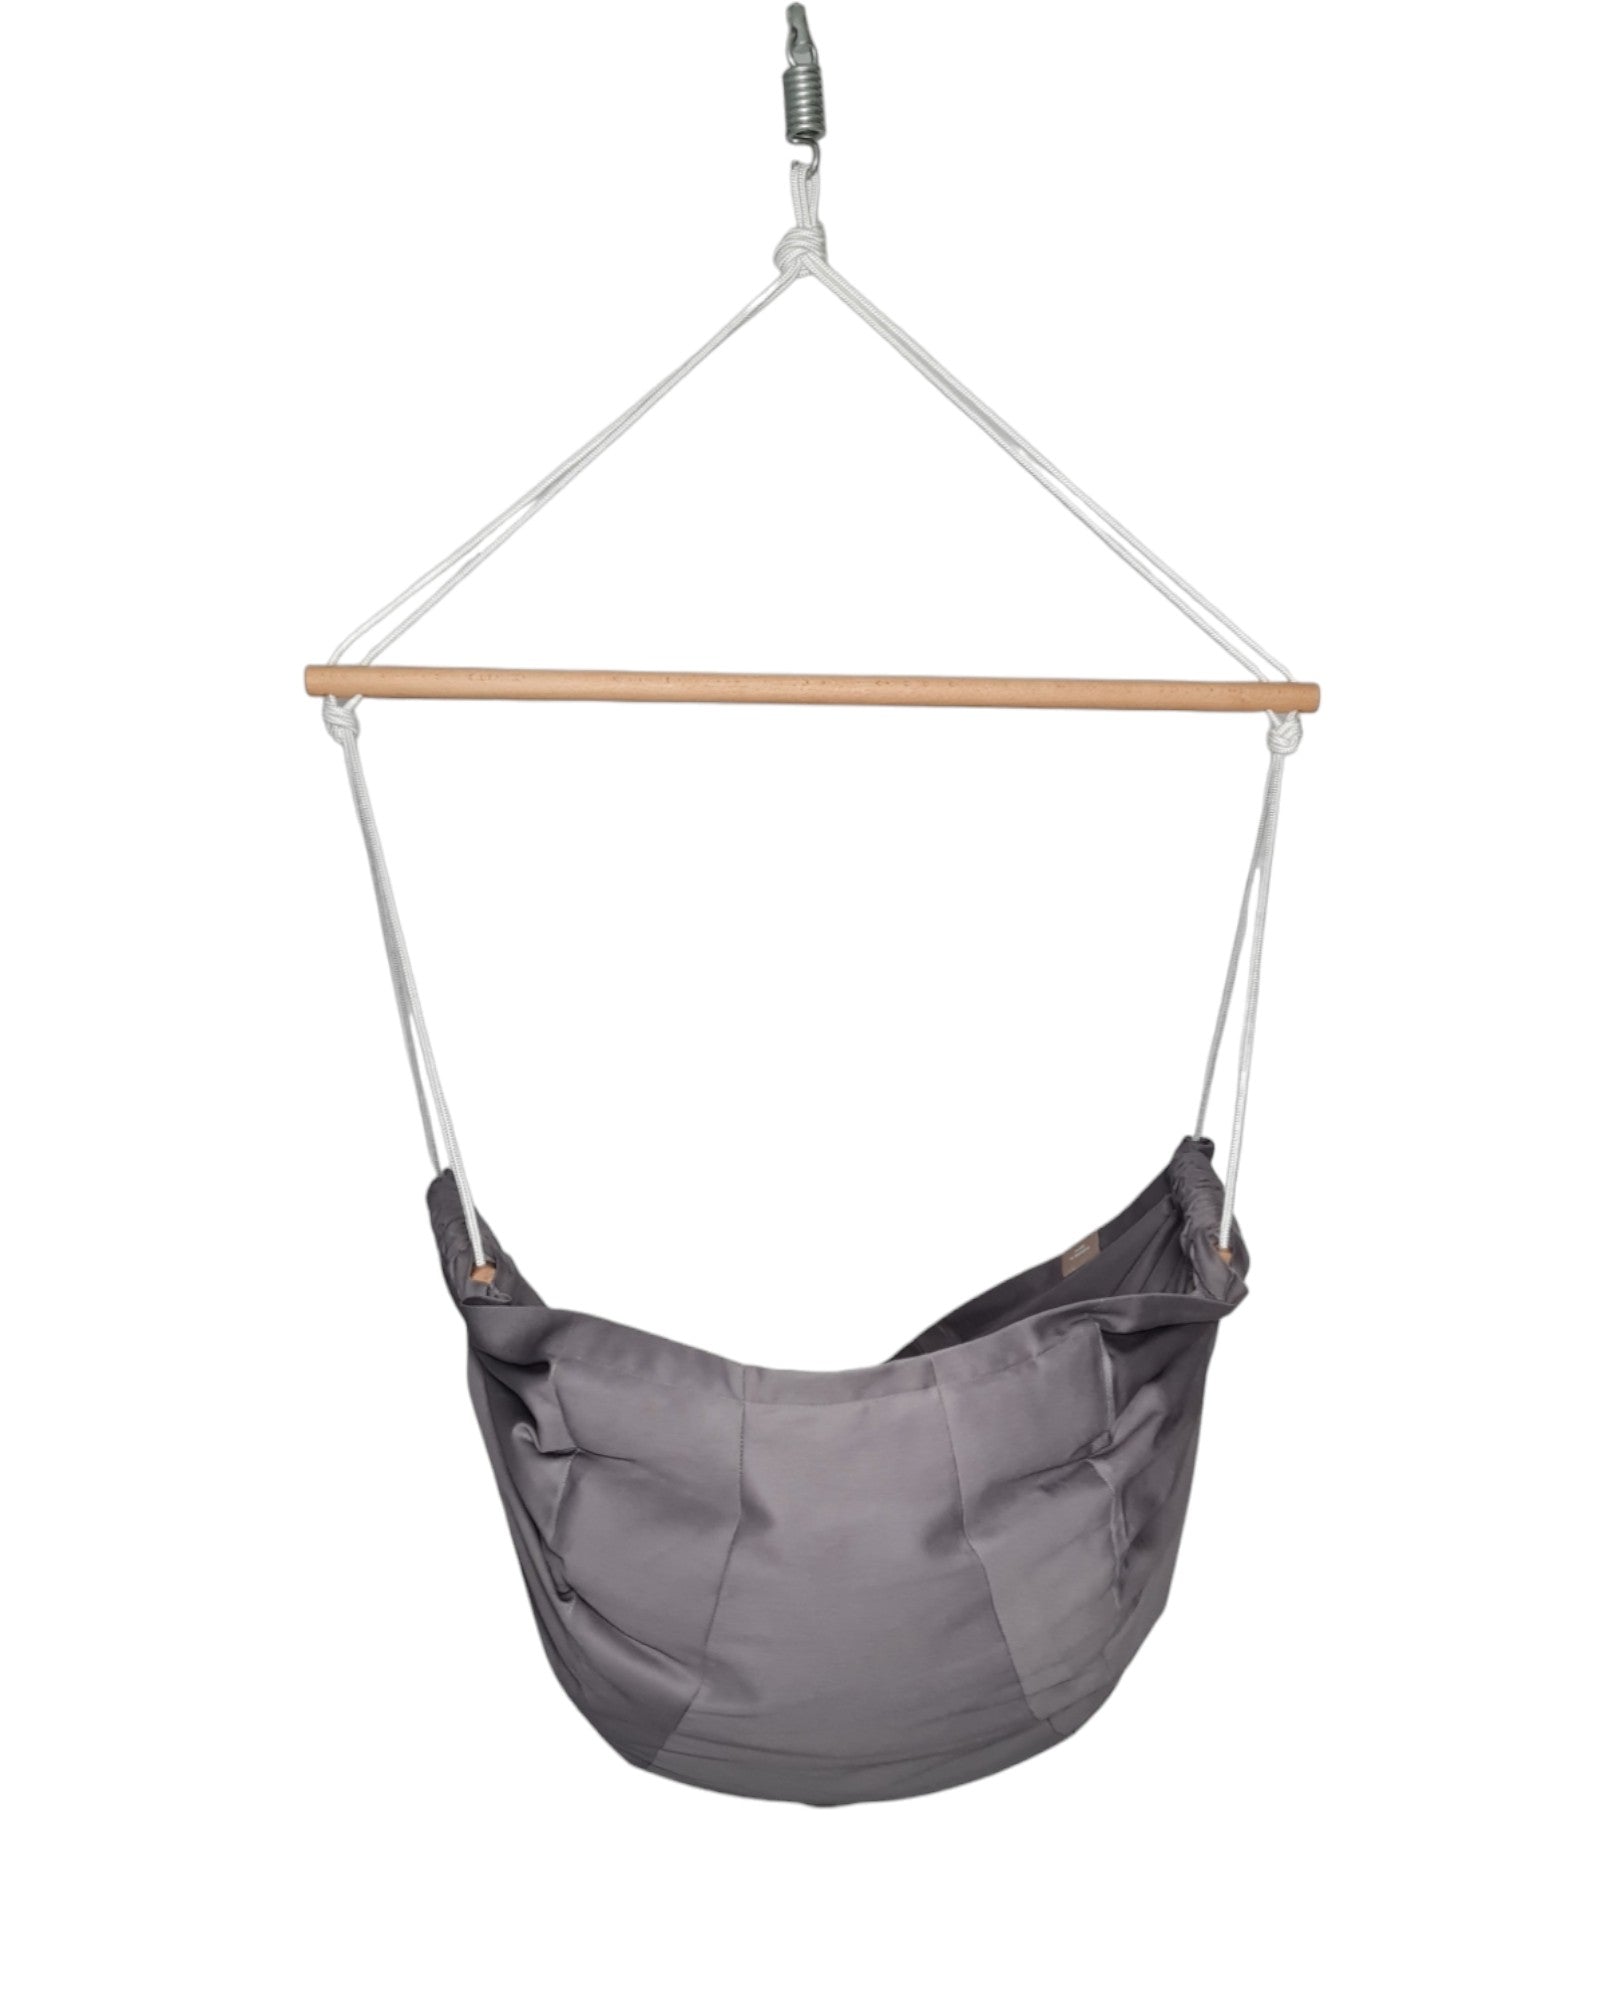 homba® zen hanging chair cotton grey